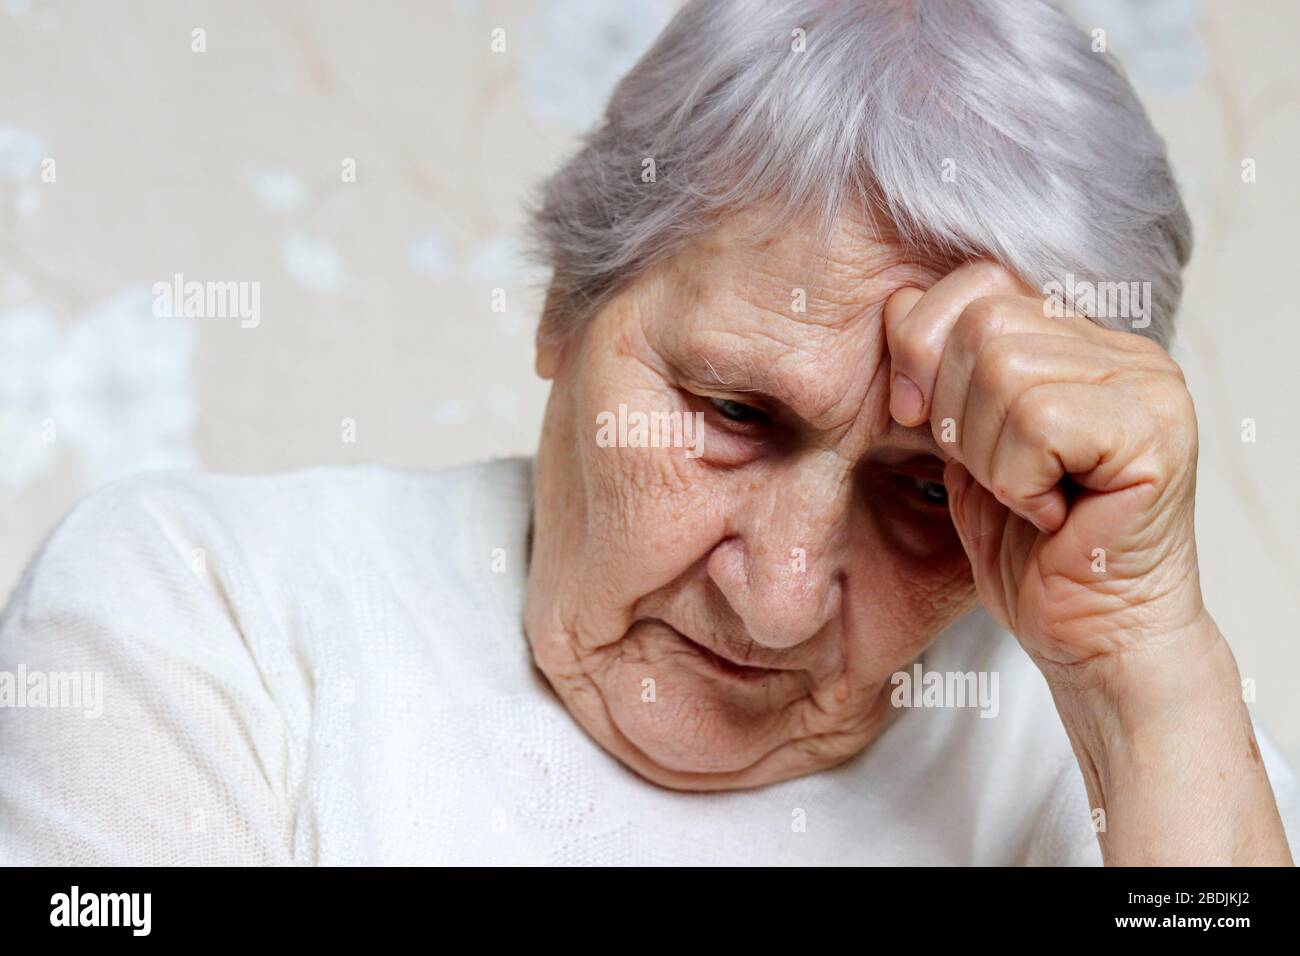 Ältere Frau dachte über etwas nach. Trauriges Weibchen mit grauem Haar und zerknitterter Haut, Konzept von Kopfschmerzen, Erinnerungen, Einsamkeit und Alter Stockfoto